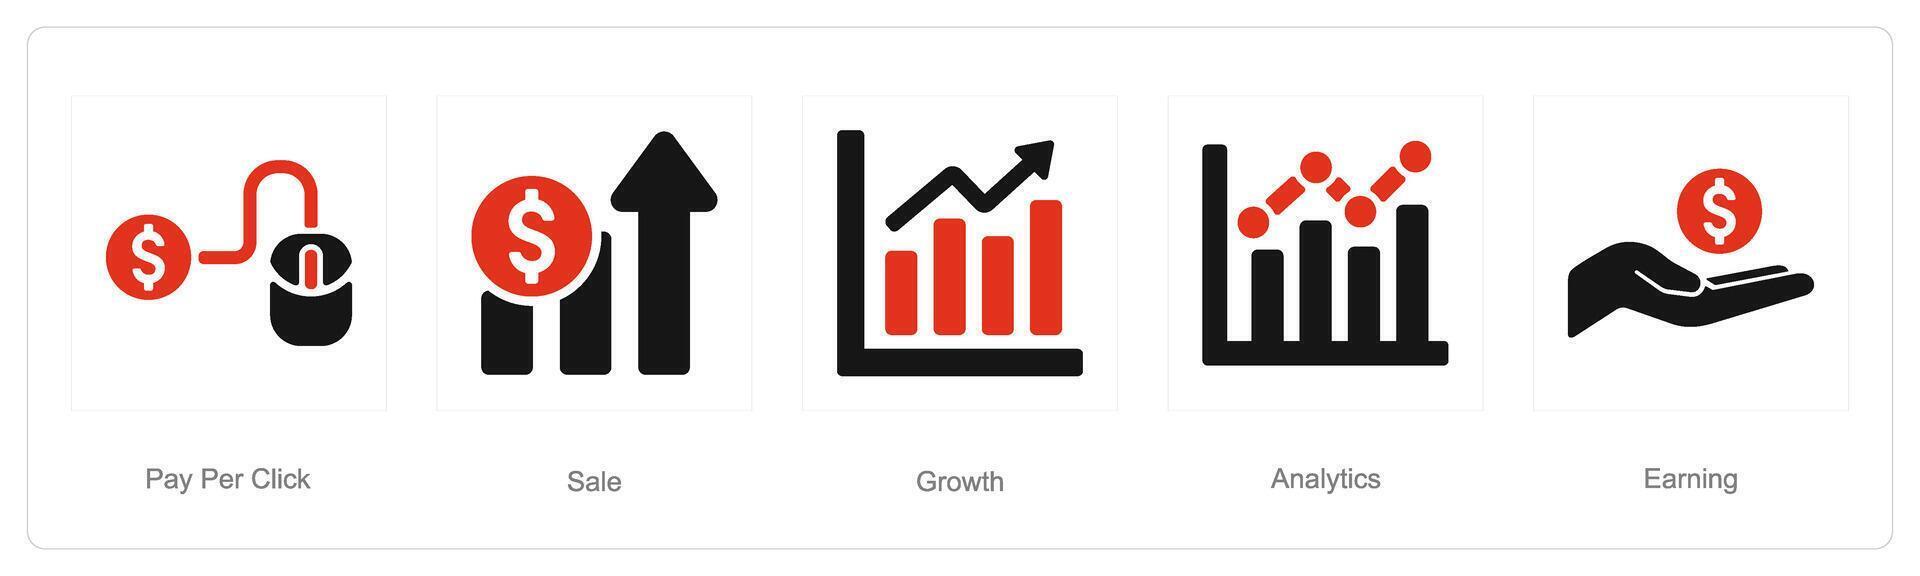 en uppsättning av 5 digital marknadsföring ikoner som betala per klick, försäljning, tillväxt vektor